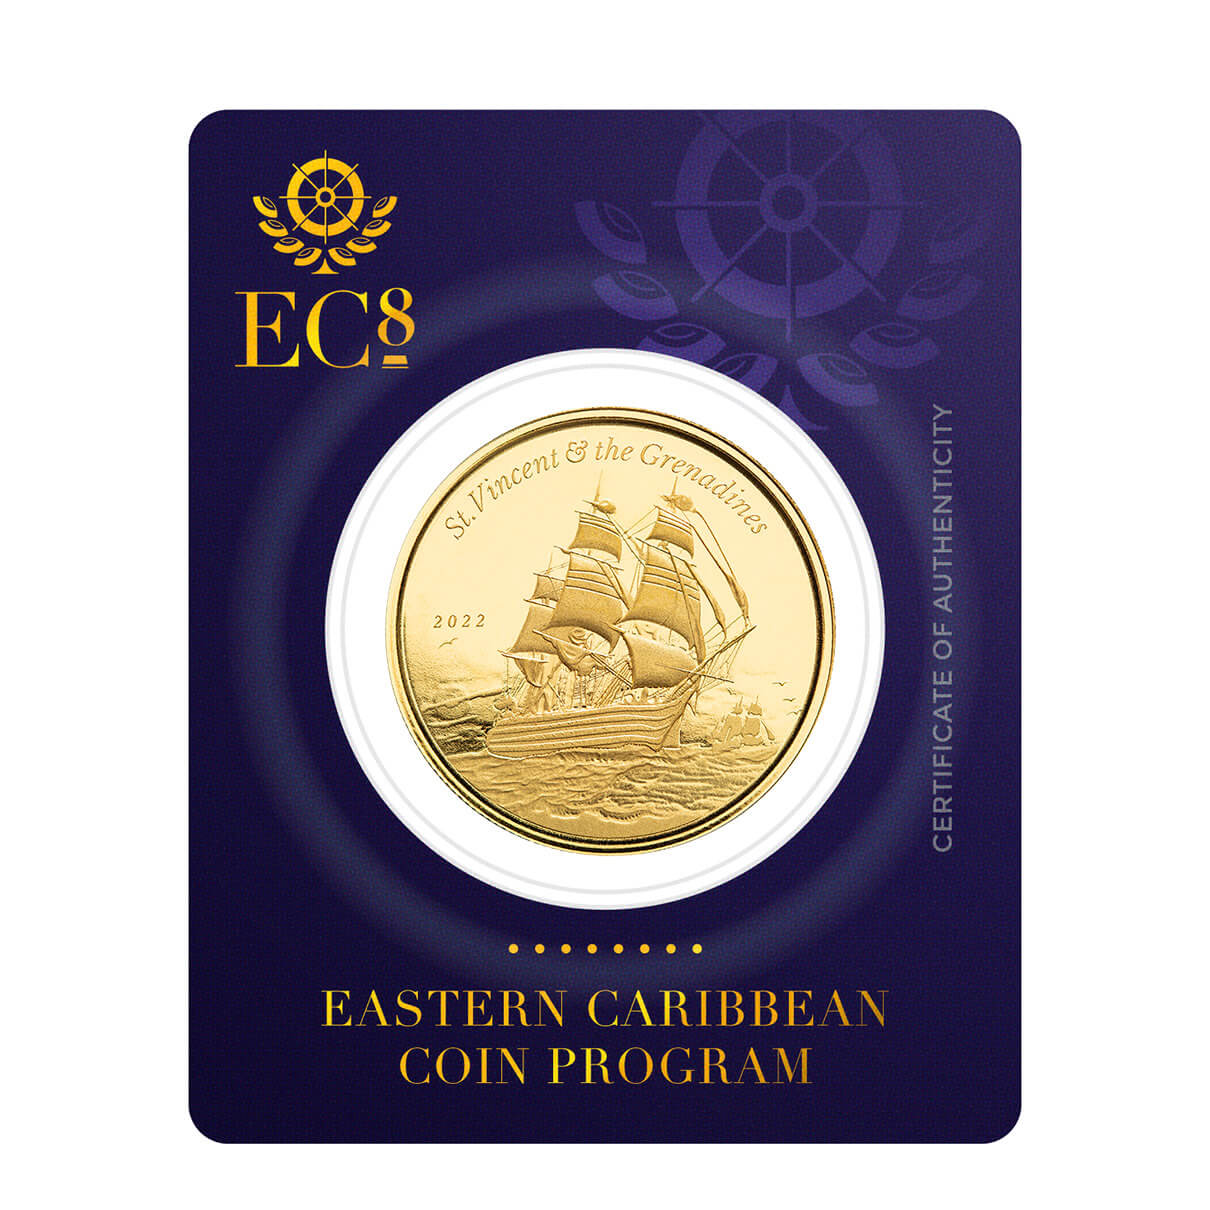 2022 Scottsdale Mint Ec8 Saint Vincent & The Grenadines Battle Of Cape St Vincent 1 Oz Gold Proof Like Coin 03